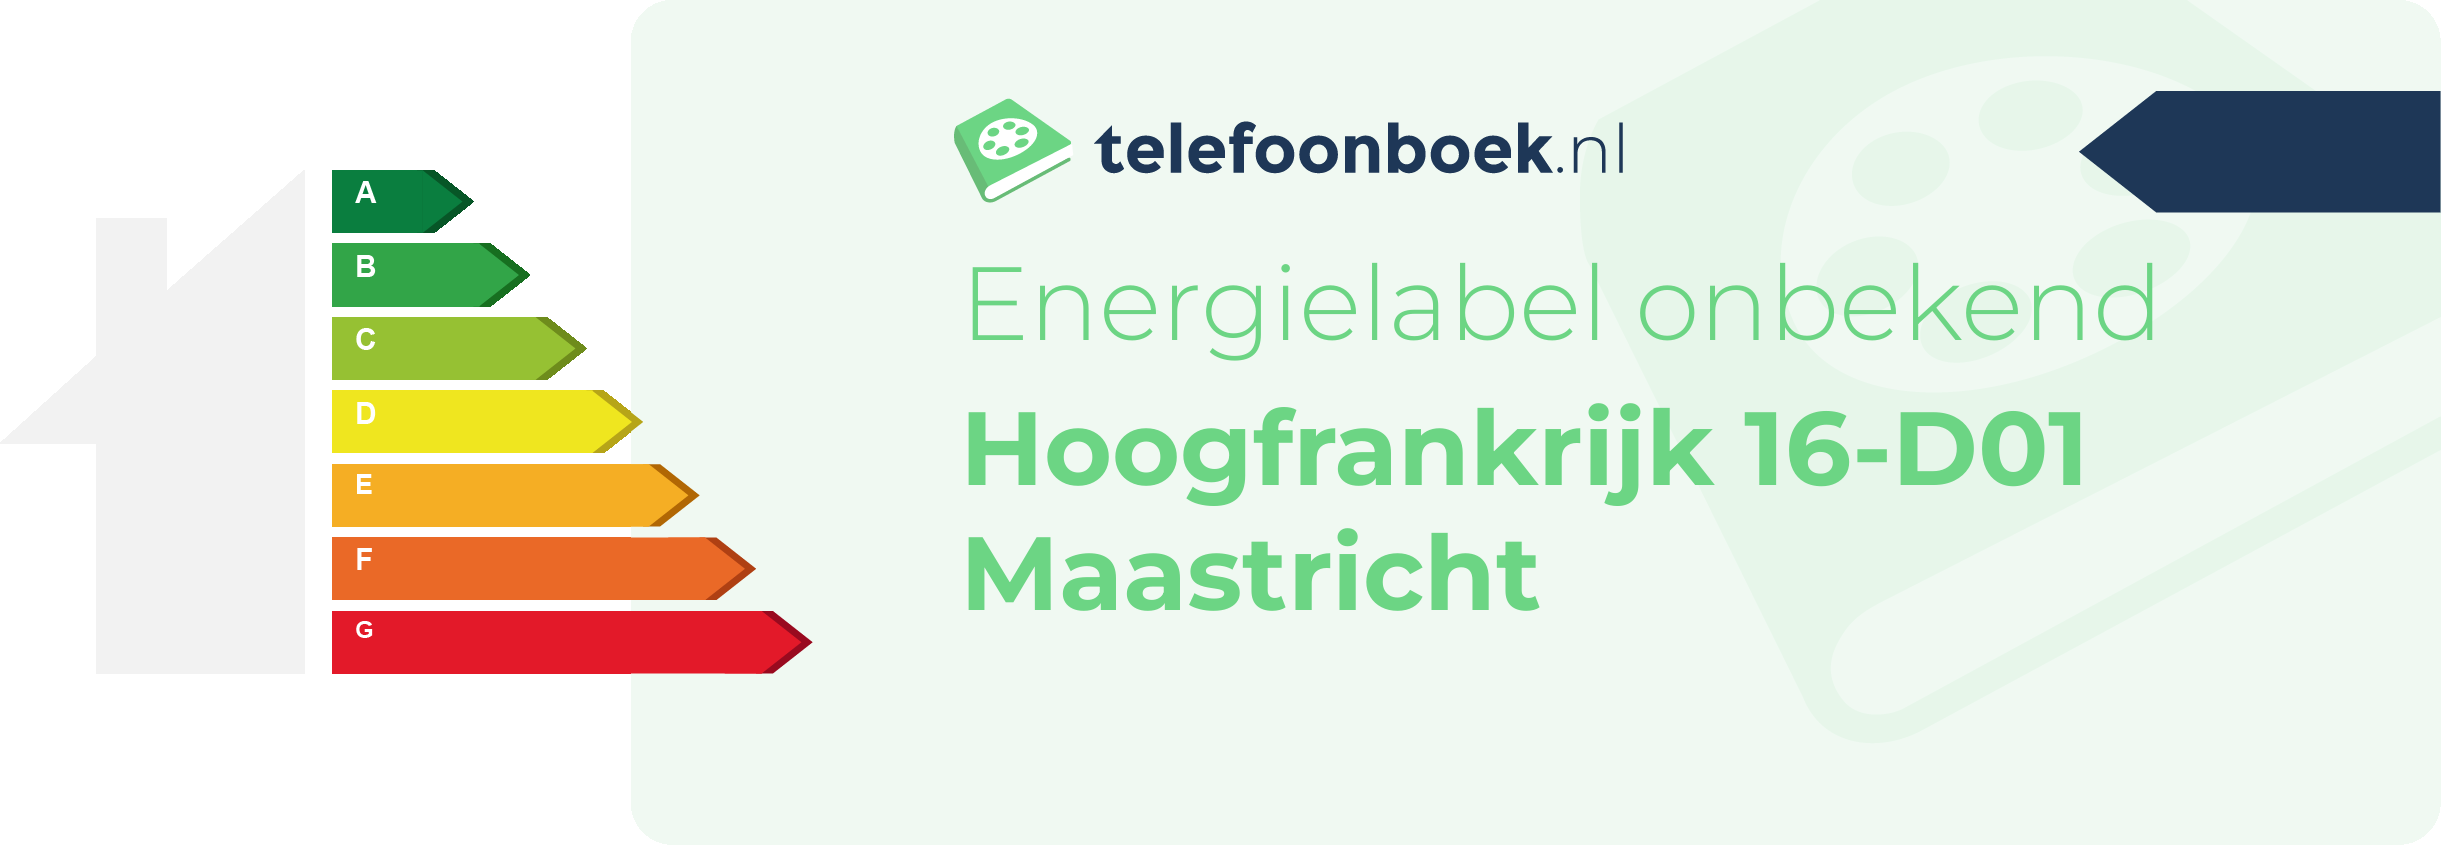 Energielabel Hoogfrankrijk 16-D01 Maastricht